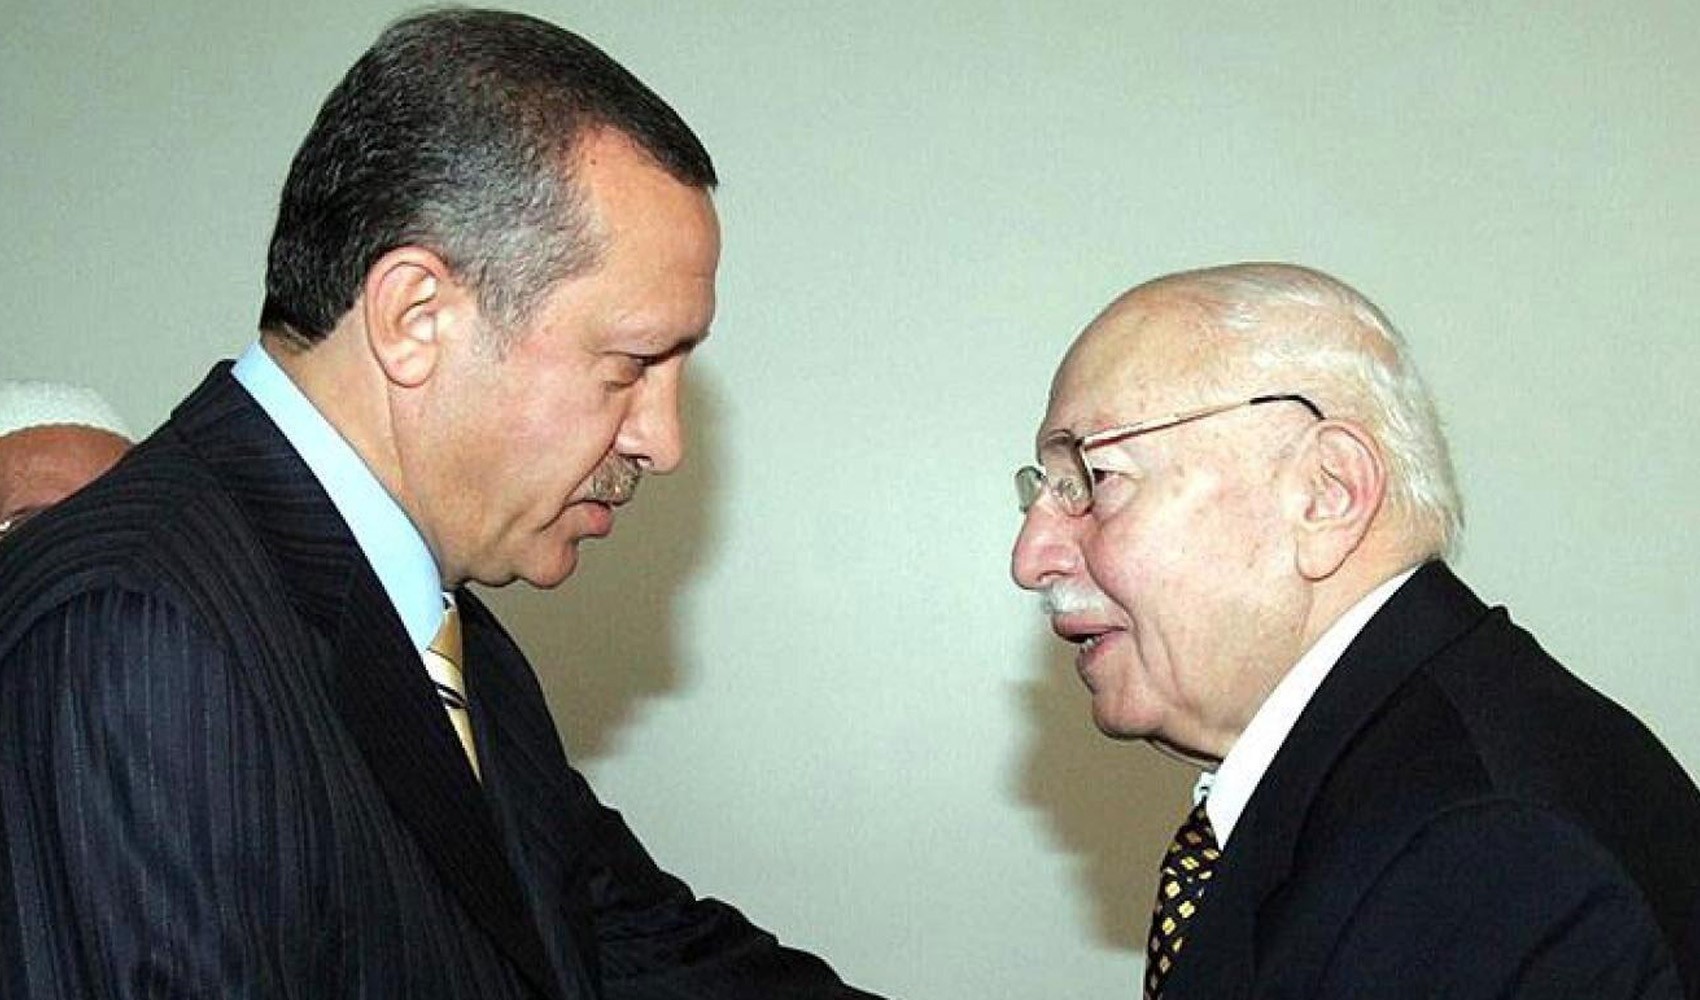 İmamoğlu'ndan Erdoğan'a 'Erbakan' tavsiyesi: 'O kadar güzel anlatmış ki...'